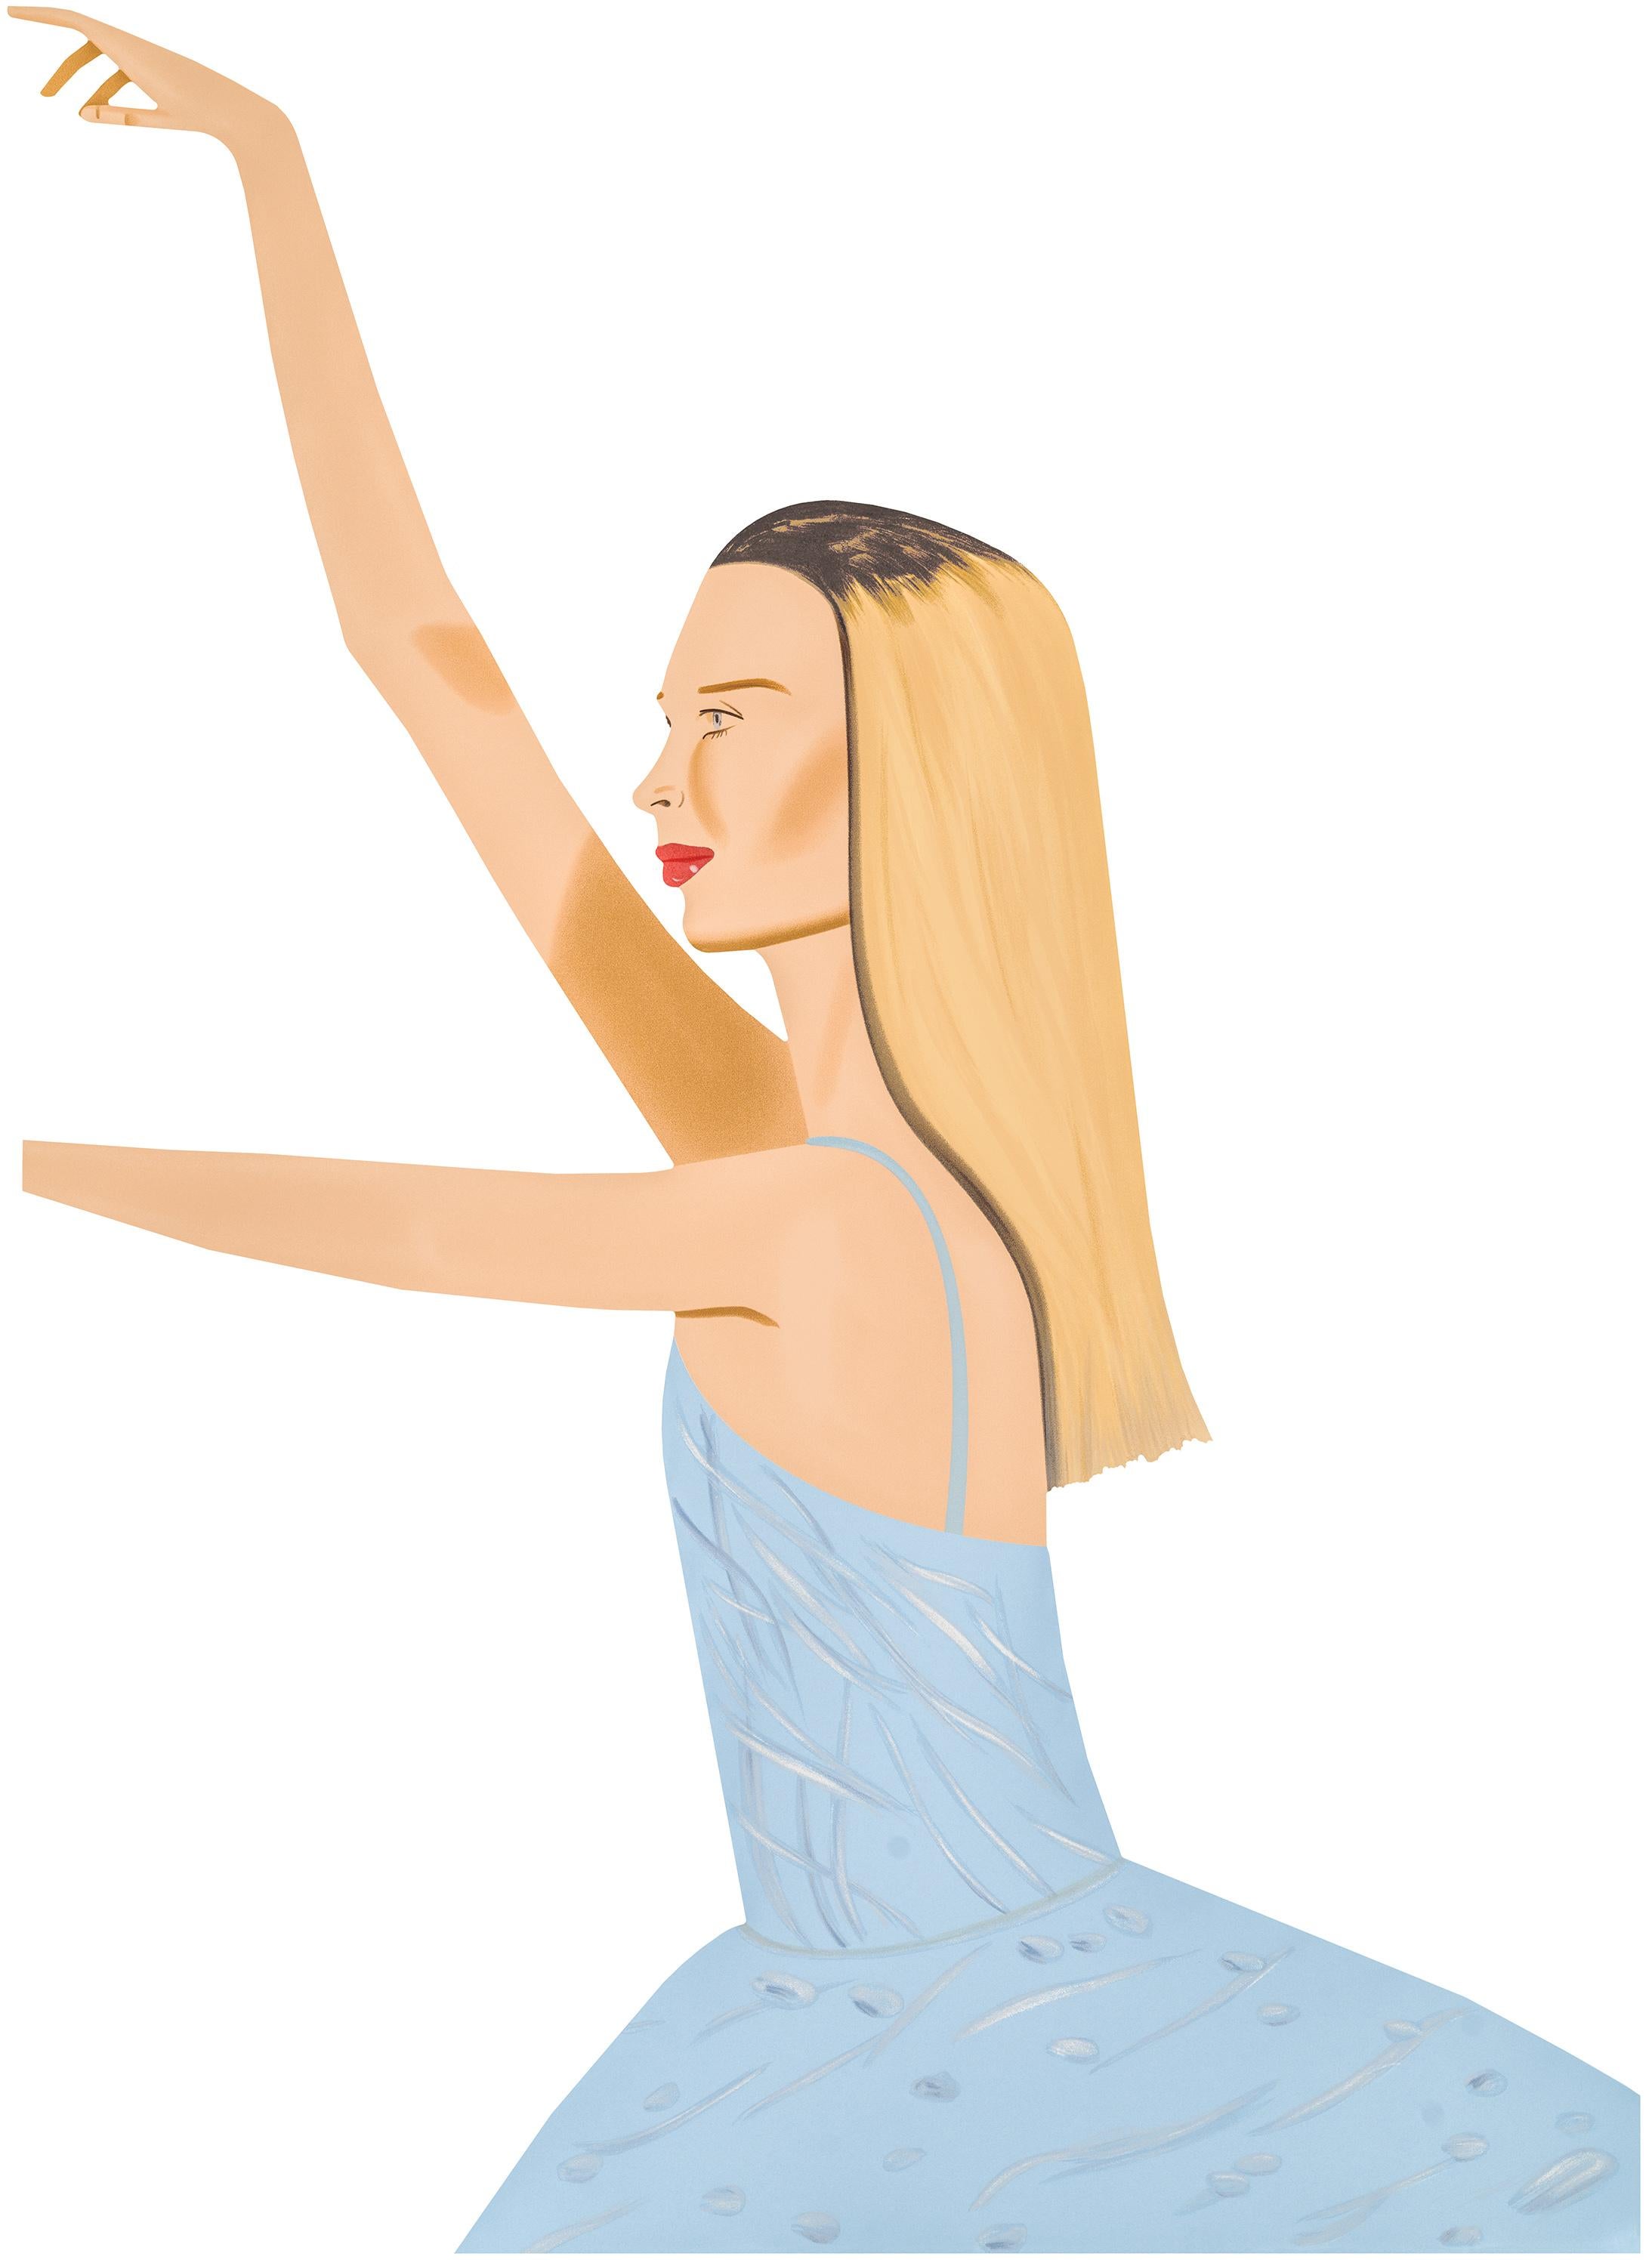 Alex Katz Figurative Sculpture - Dancer 2 (cutout) - ballet, dancing, light blue, black, blonde, dress